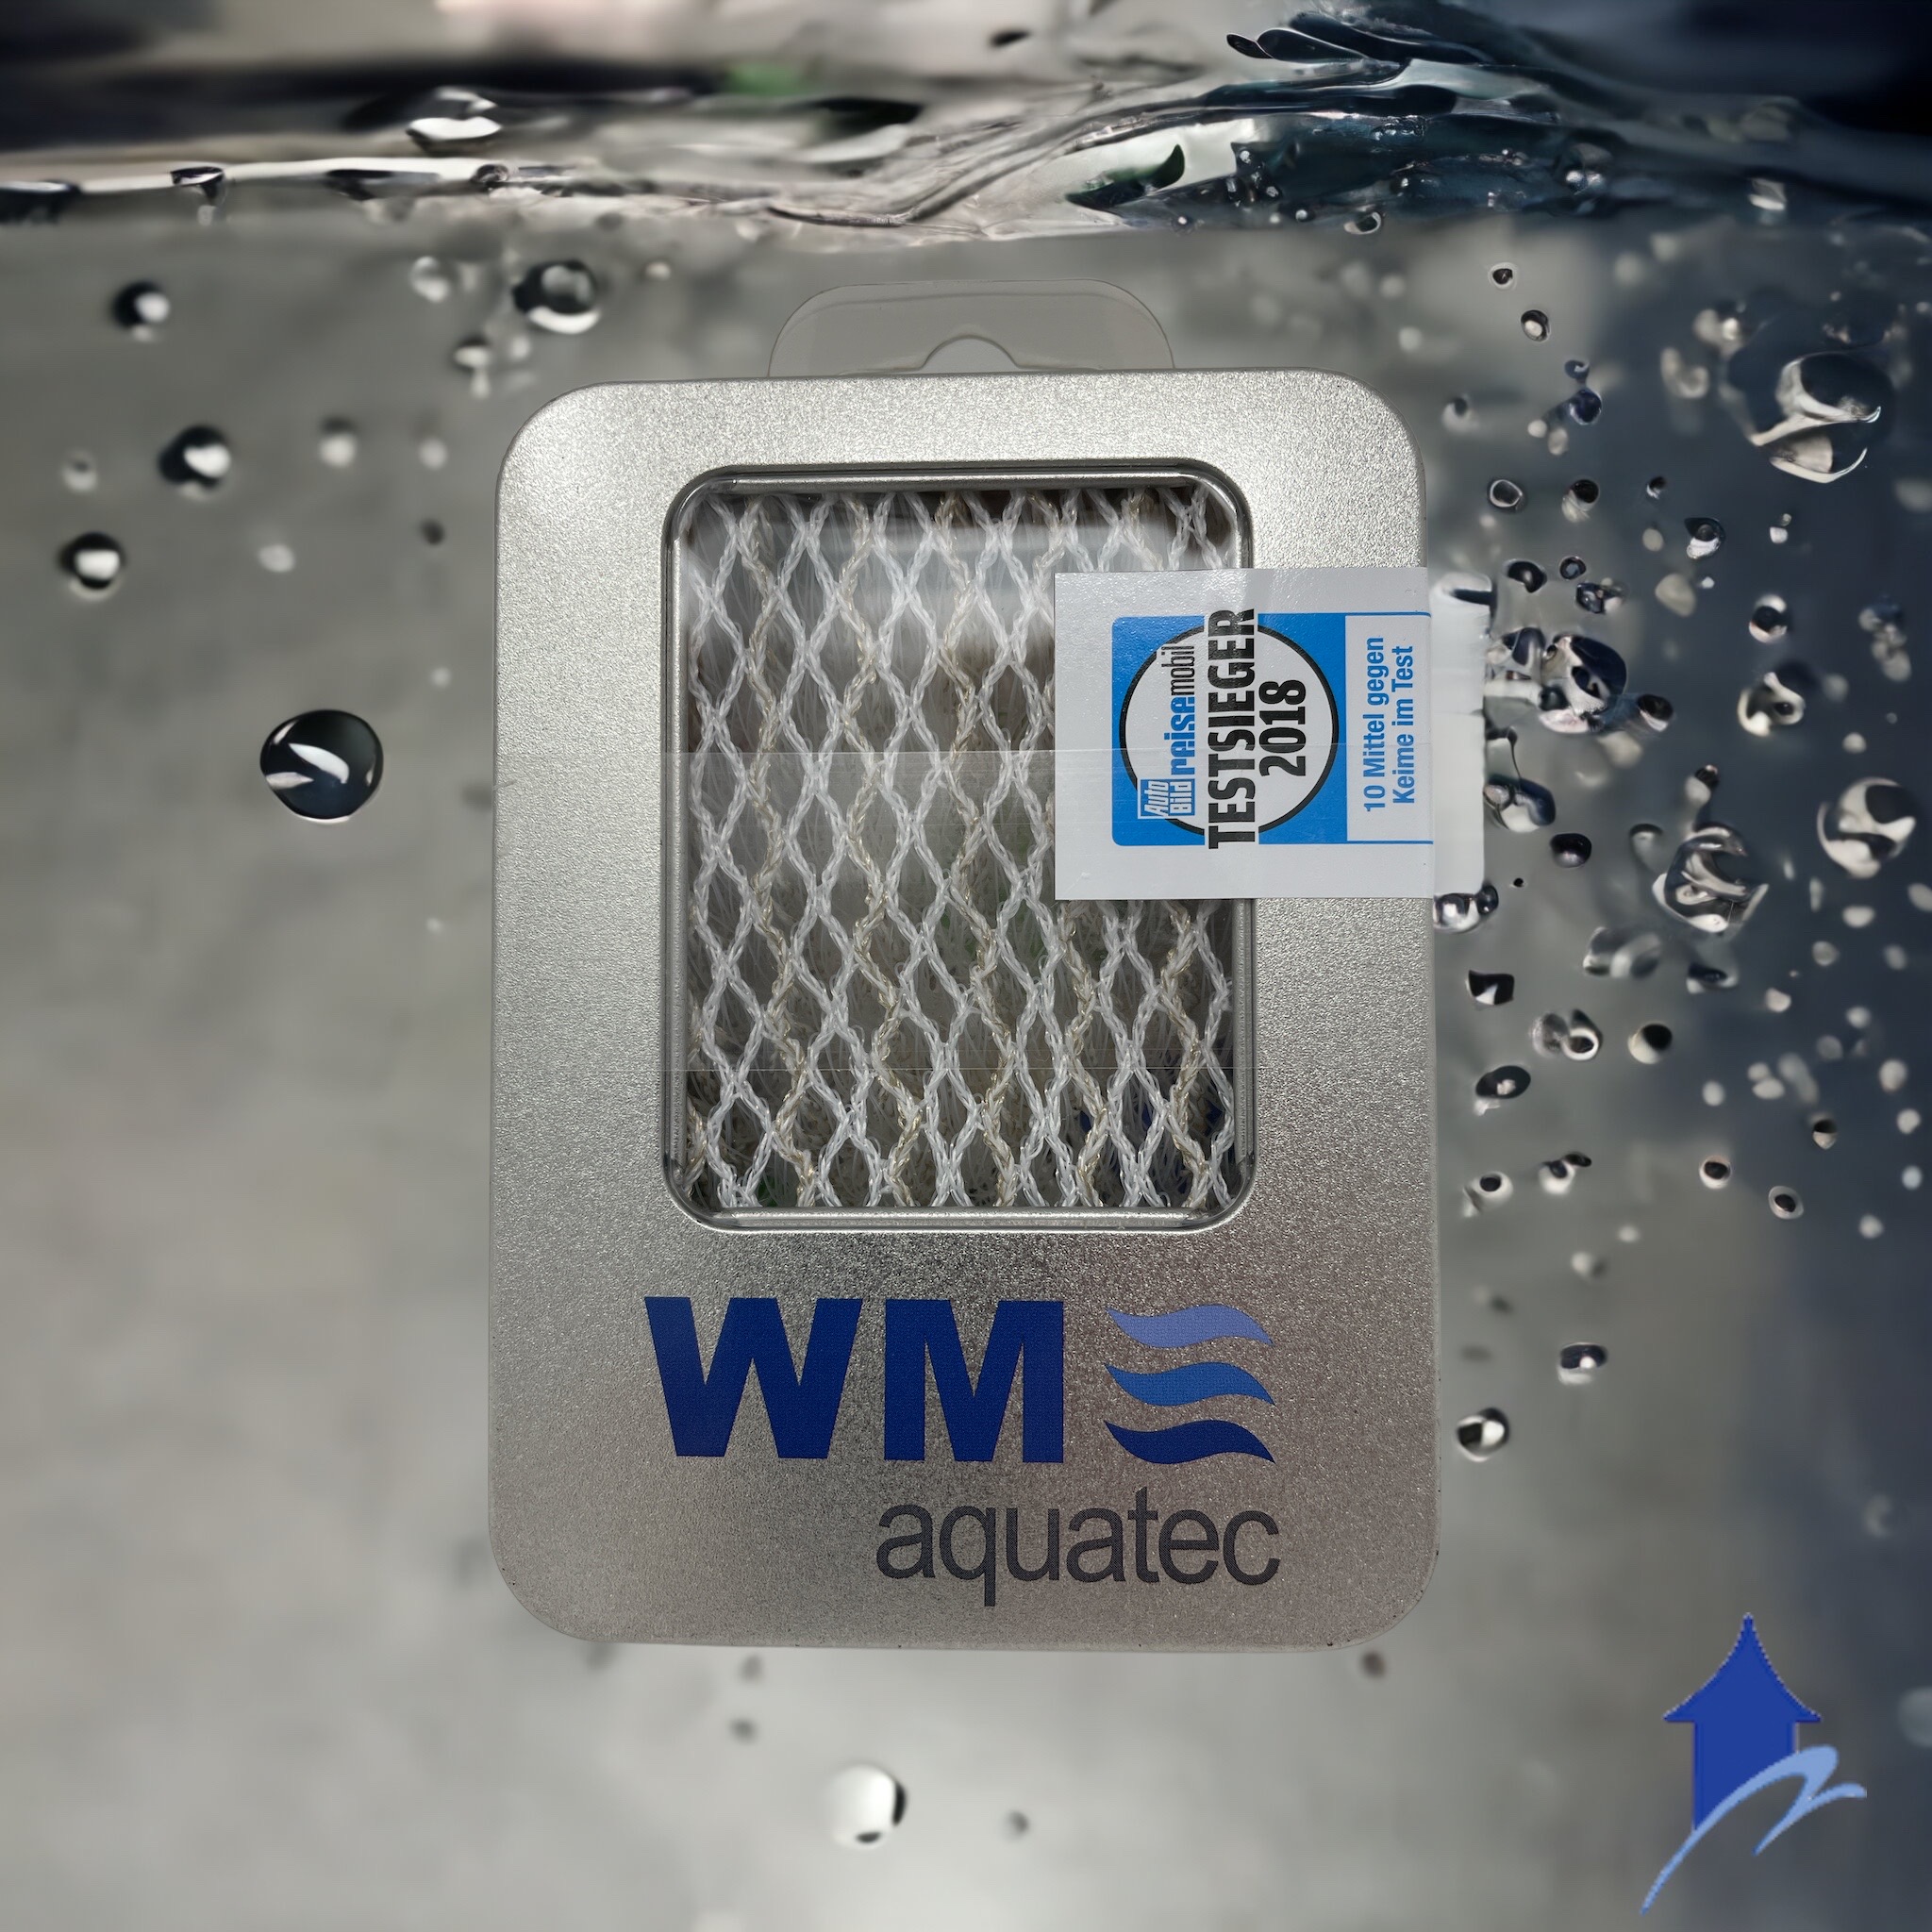 WM aquatec Water Filter Set Mobile Edition au meilleur prix sur